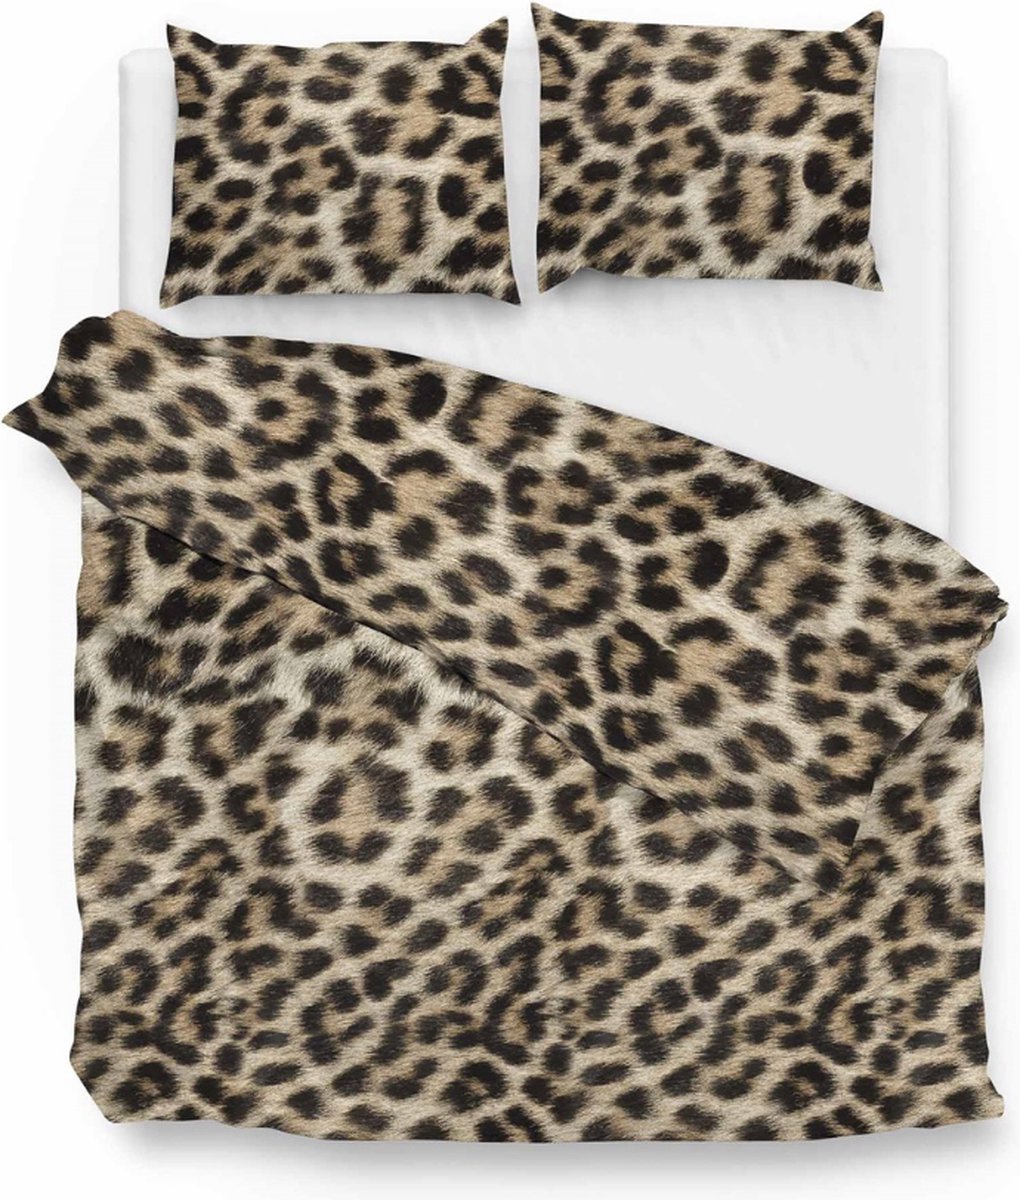 Warme flanel dekbedovertrek Leopard - extra breed (260x200/220) - hoogwaardig en zacht - ideaal tegen de kou